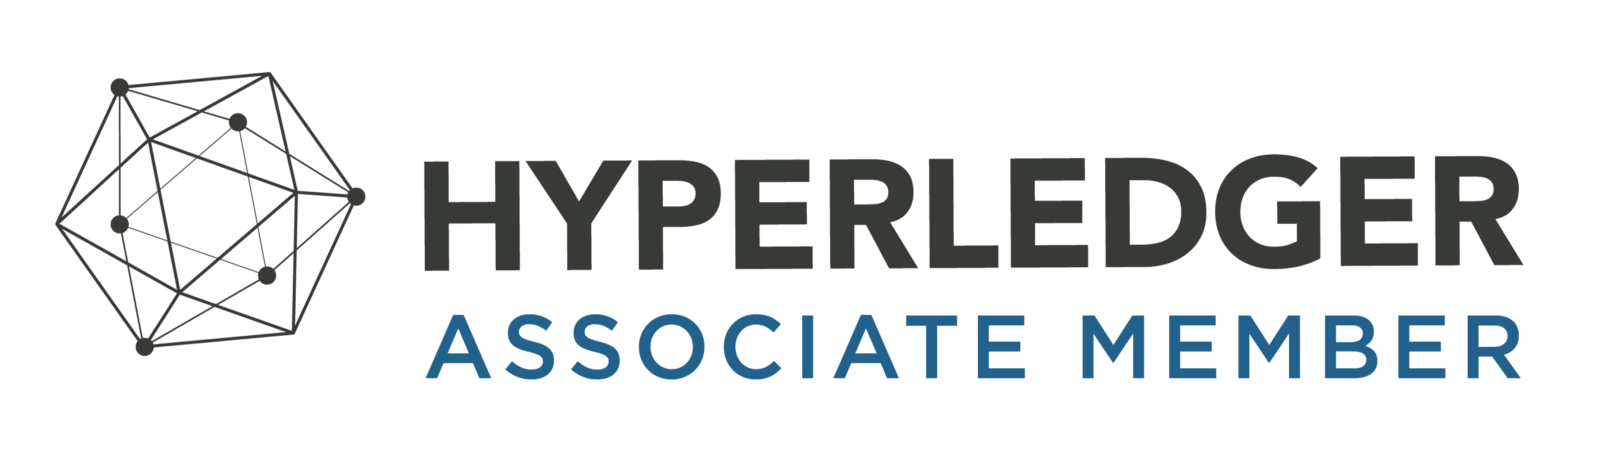 Hyperldger Association Member